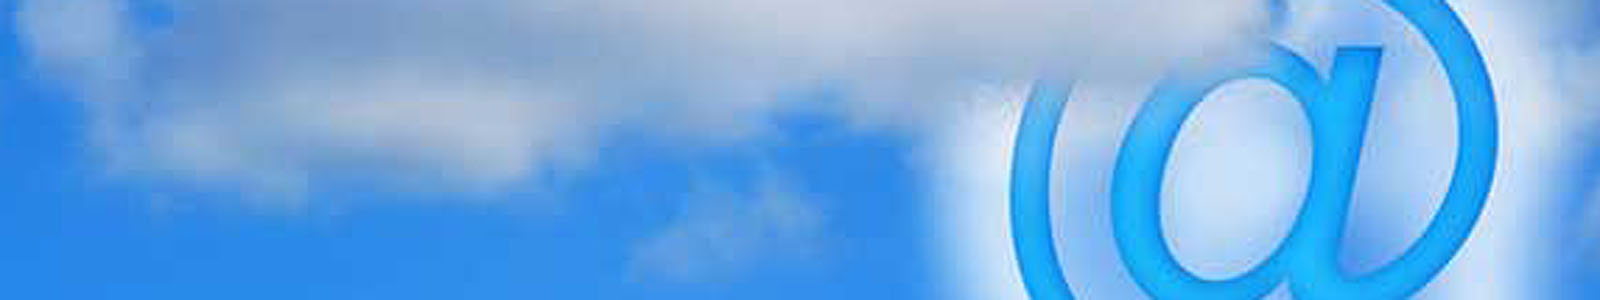 Das at-Zeichen als Symbol für E-mail-Adresse in Wolken gehüllt©DLR